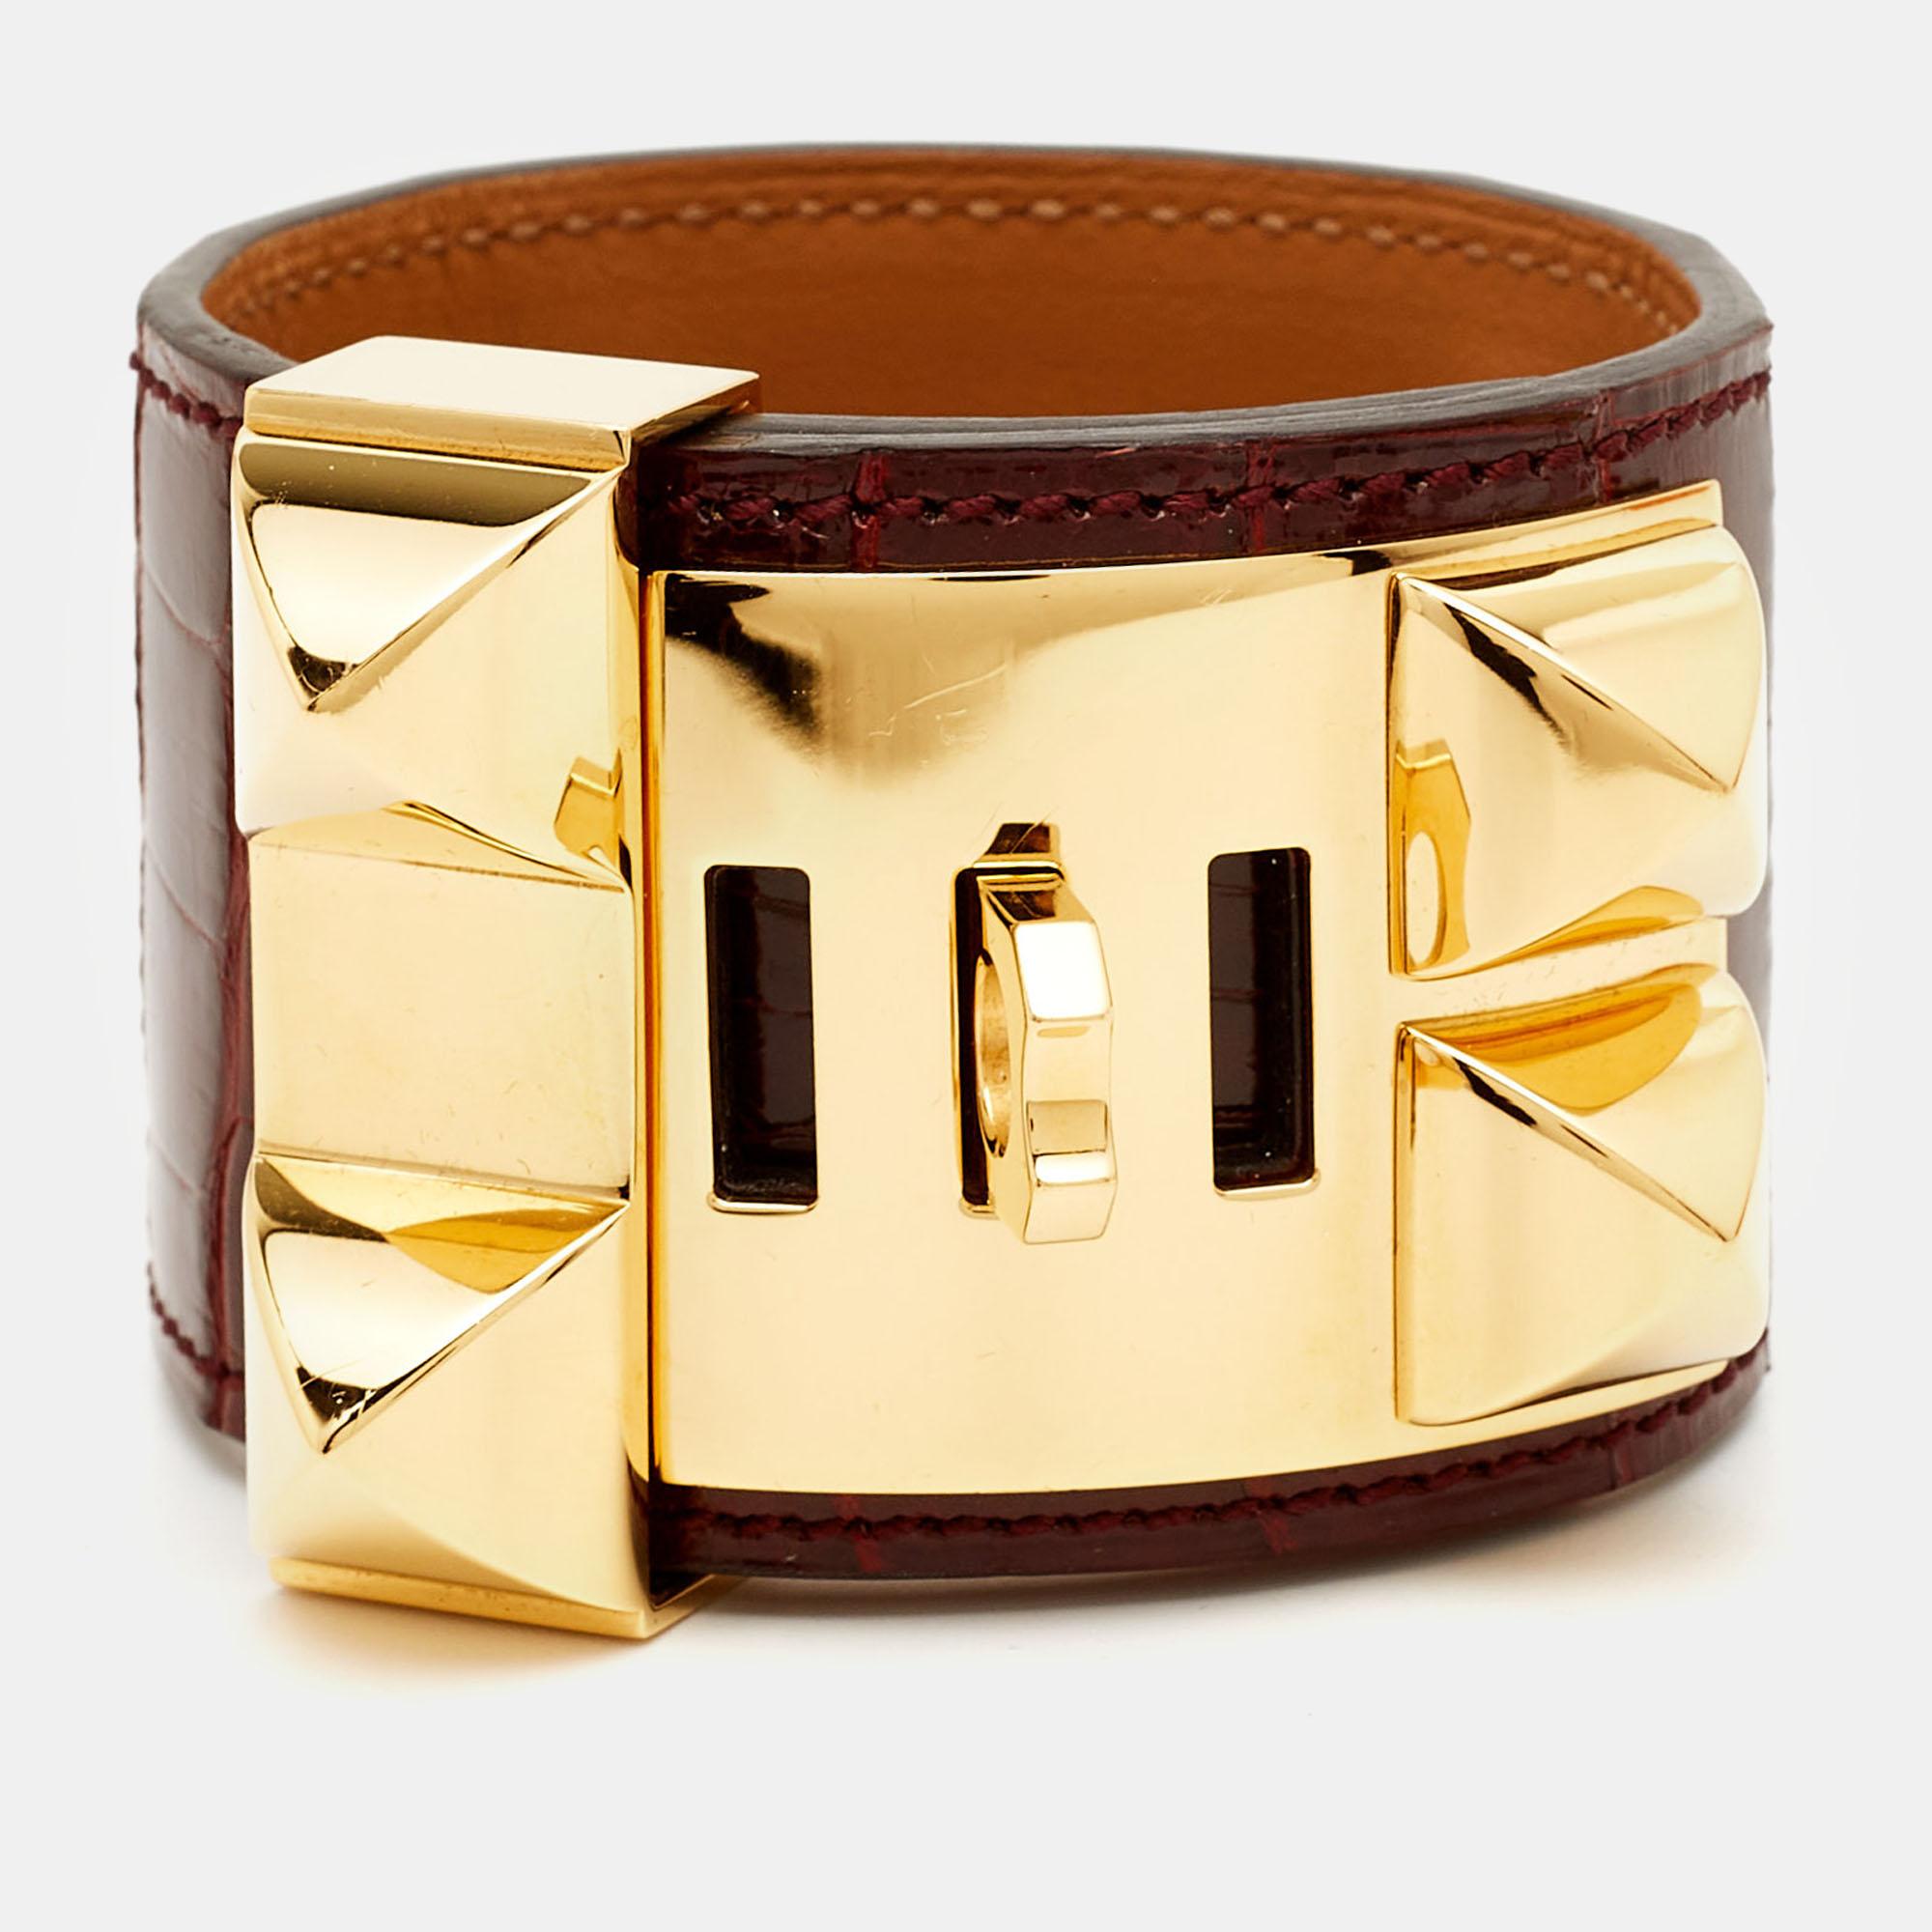 Hermes Collier De Chien Alligator Leather Gold Plated Bracelet In Good Condition For Sale In Dubai, Al Qouz 2